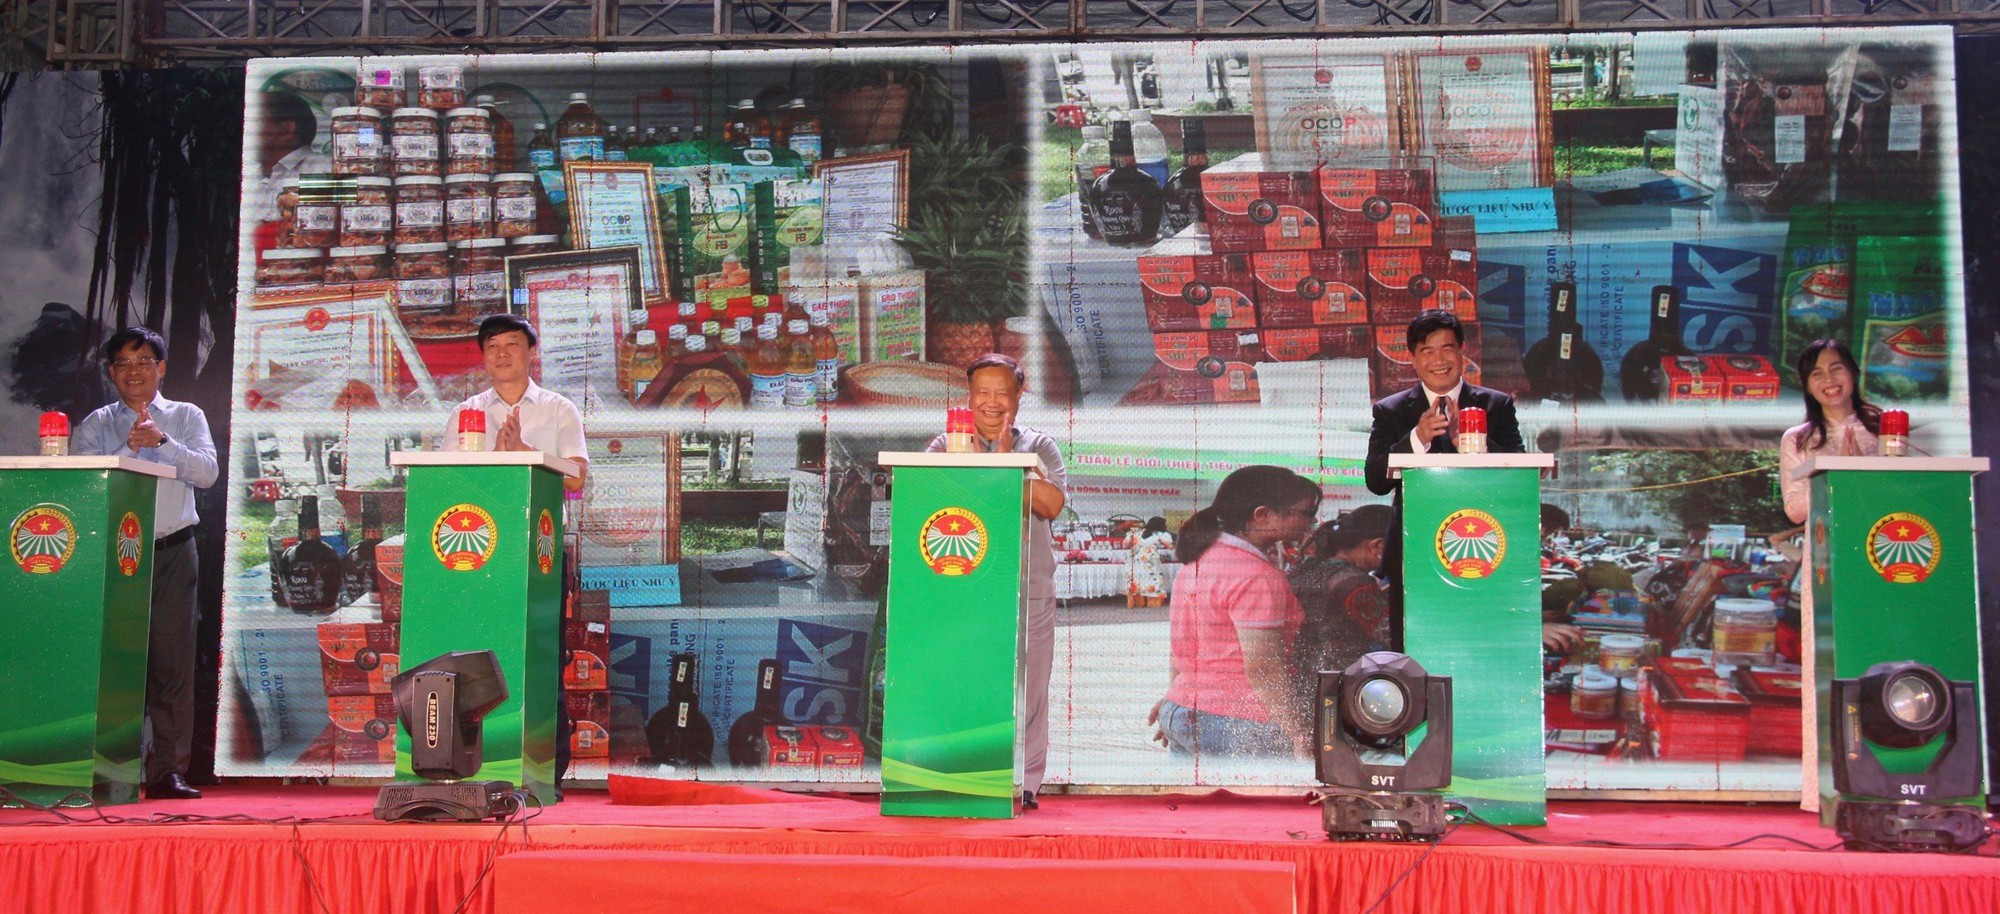 Nông dân Đắk Lắk tổ chức chuỗi sự kiện sôi nổi Kỷ niệm 120 năm Ngày thành lập tỉnh - Ảnh 2.